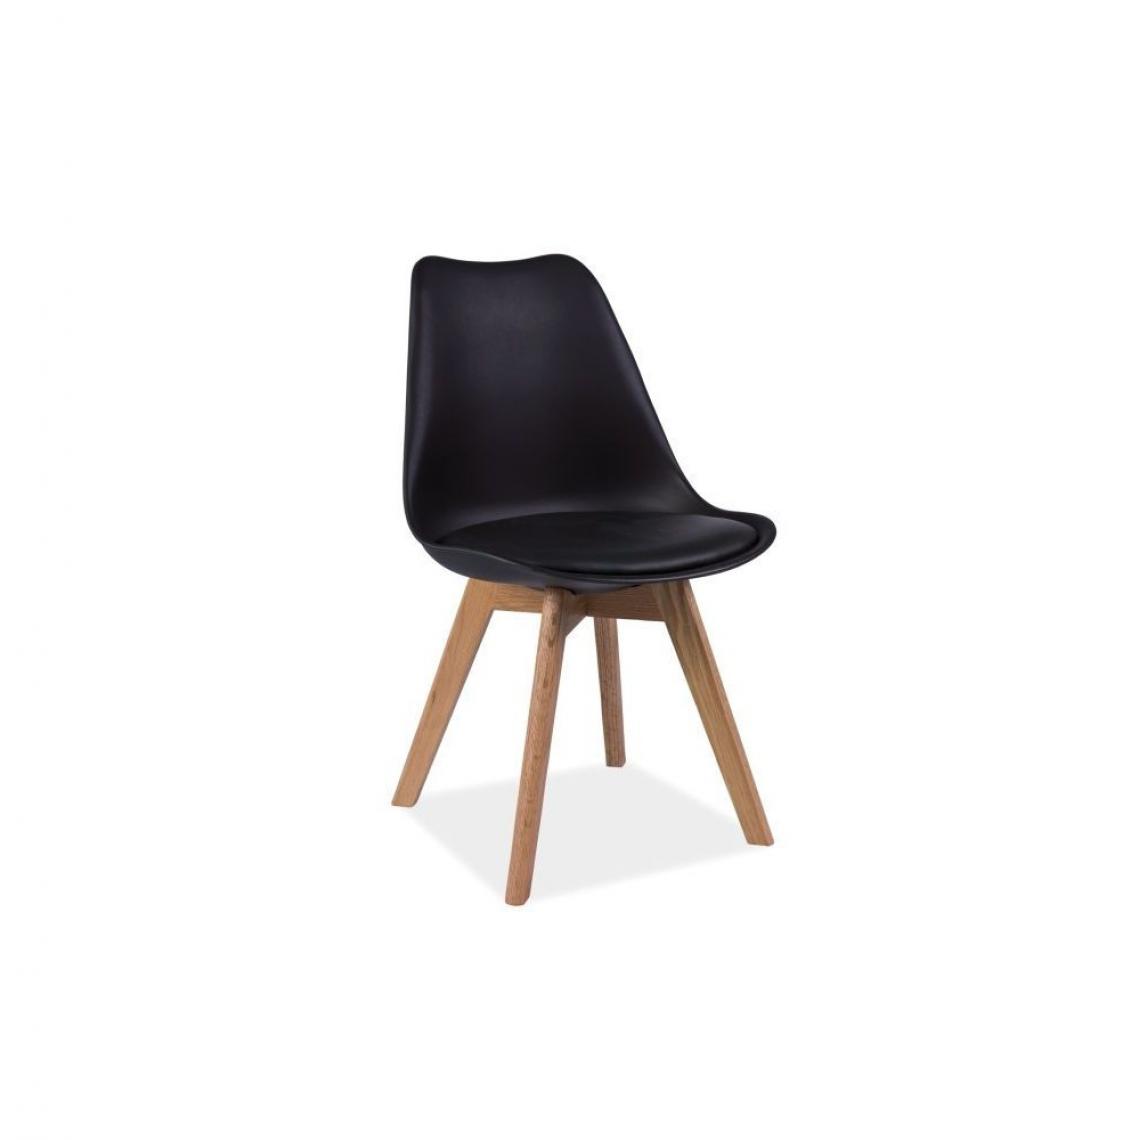 Ac-Deco - Chaise - Kris - 49 x 41 x 83 cm - Cadre en bois couleur chêne - Noir - Chaises